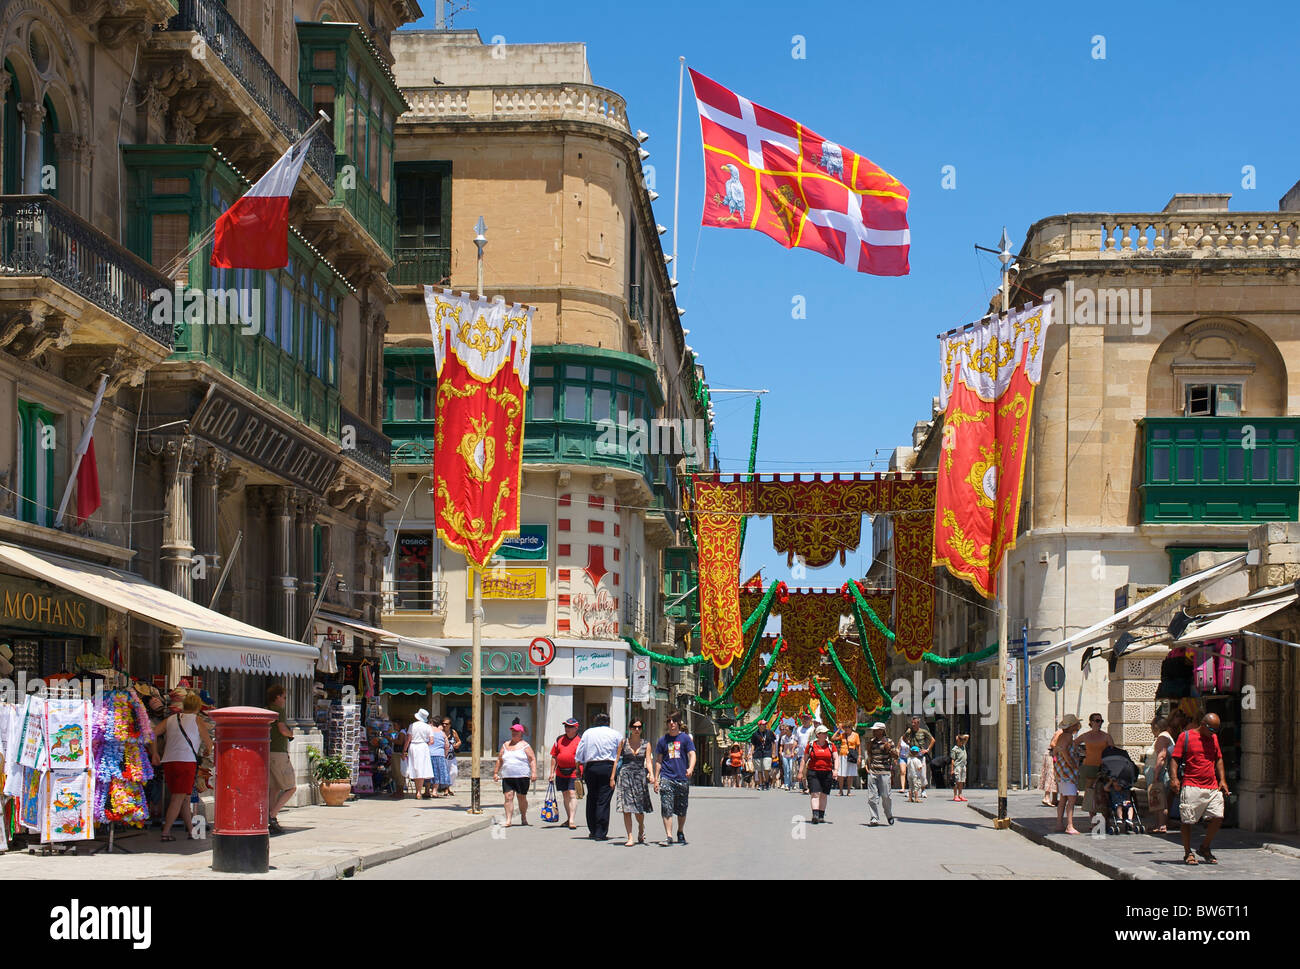 Old Town of Valletta, Malta Stock Photo